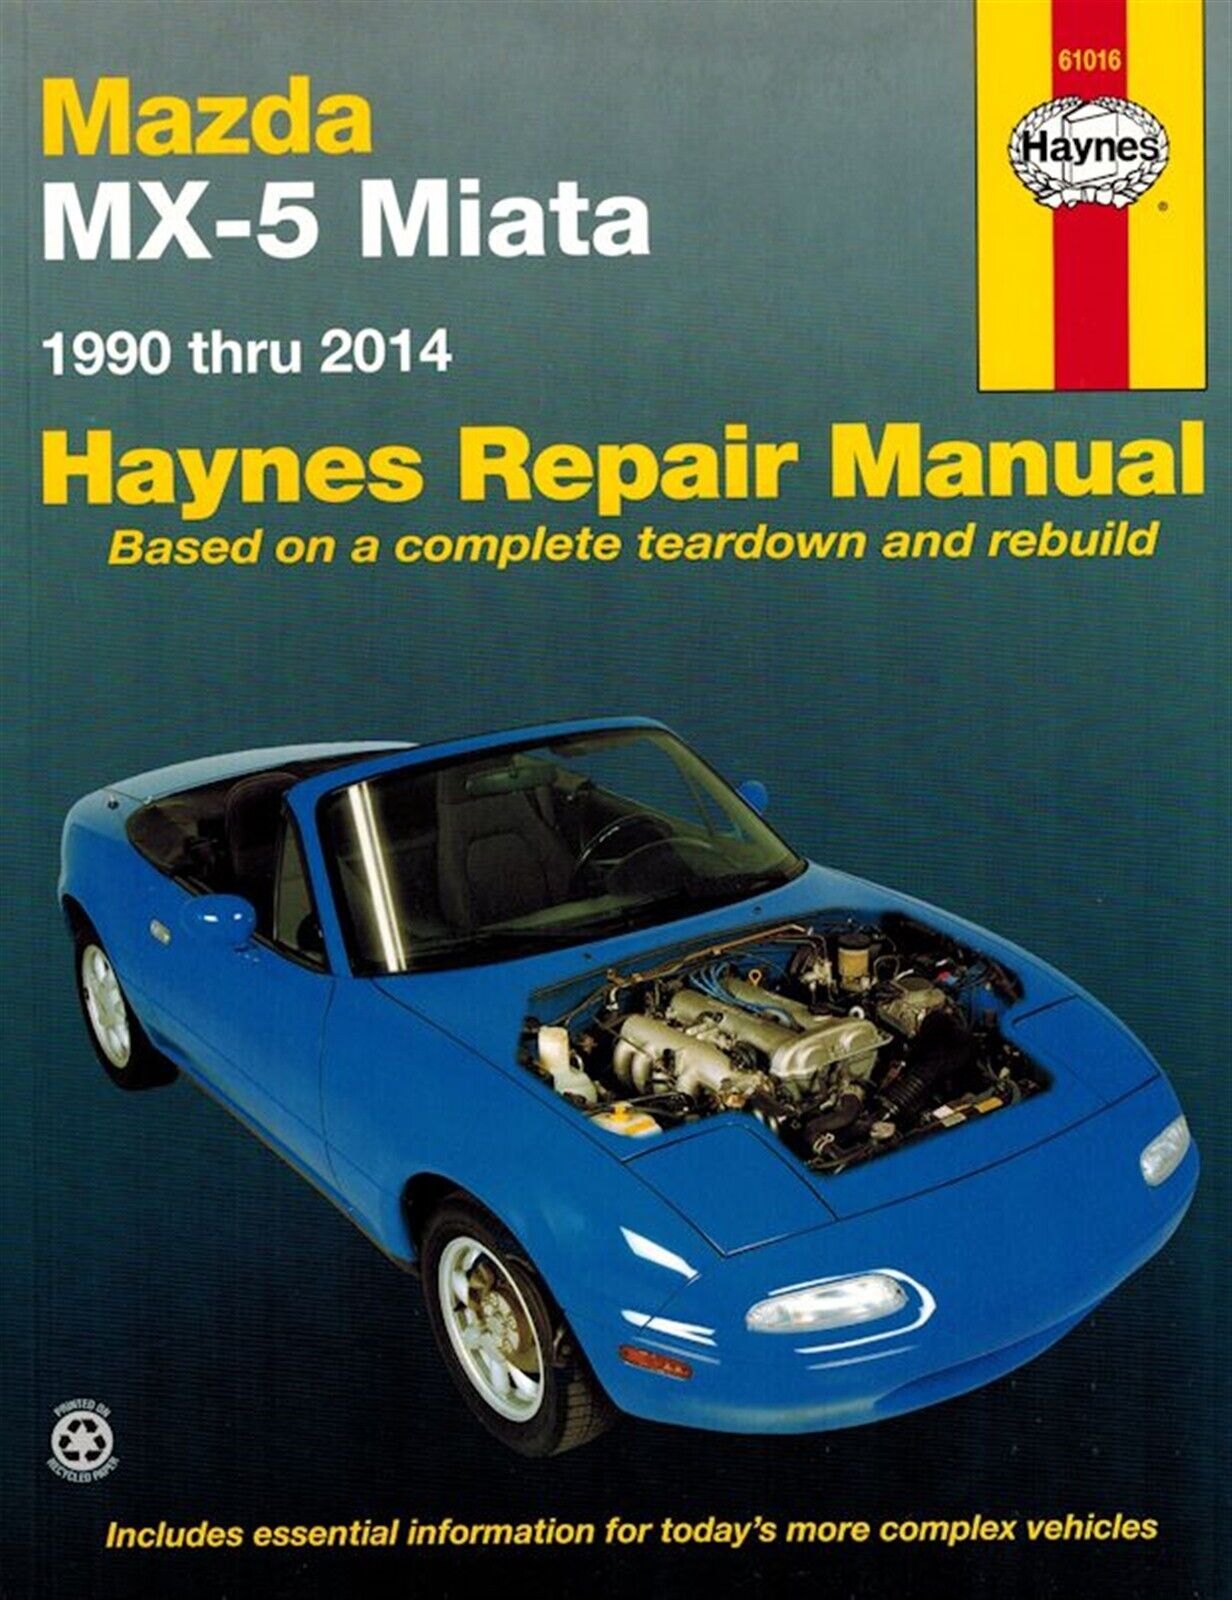 Mazda MX-5 Miata Repair Manual 1990-2014